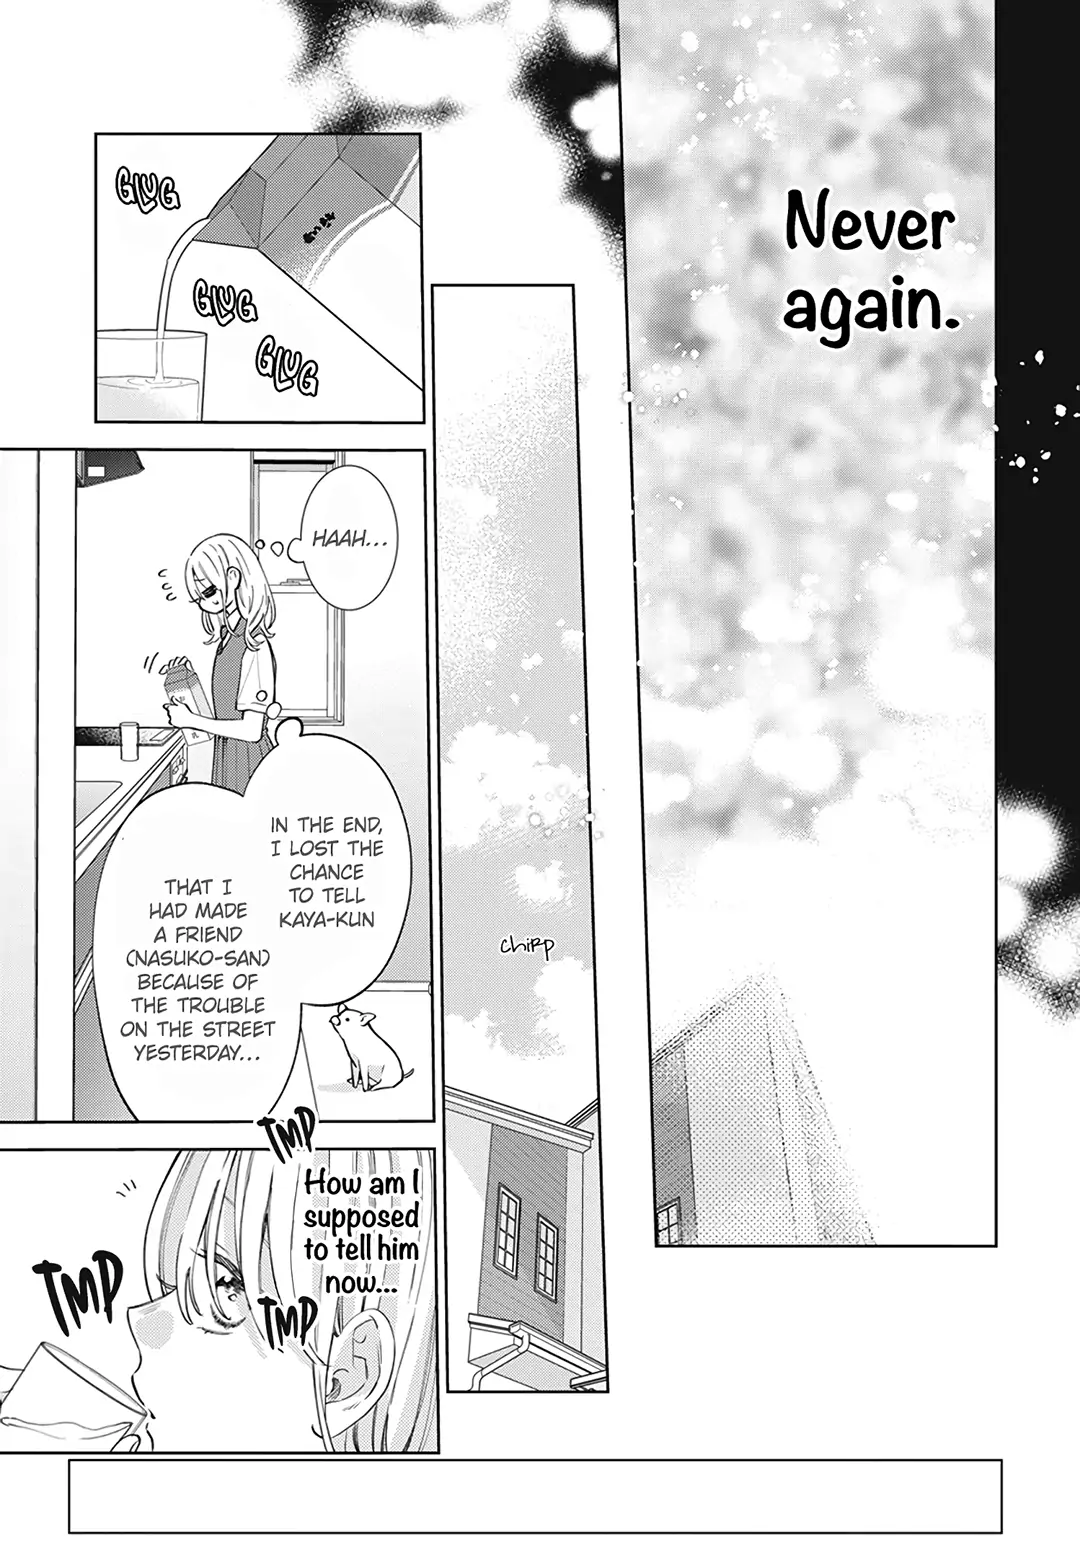 Haru No Arashi To Monster - 18 page 6-7236e314